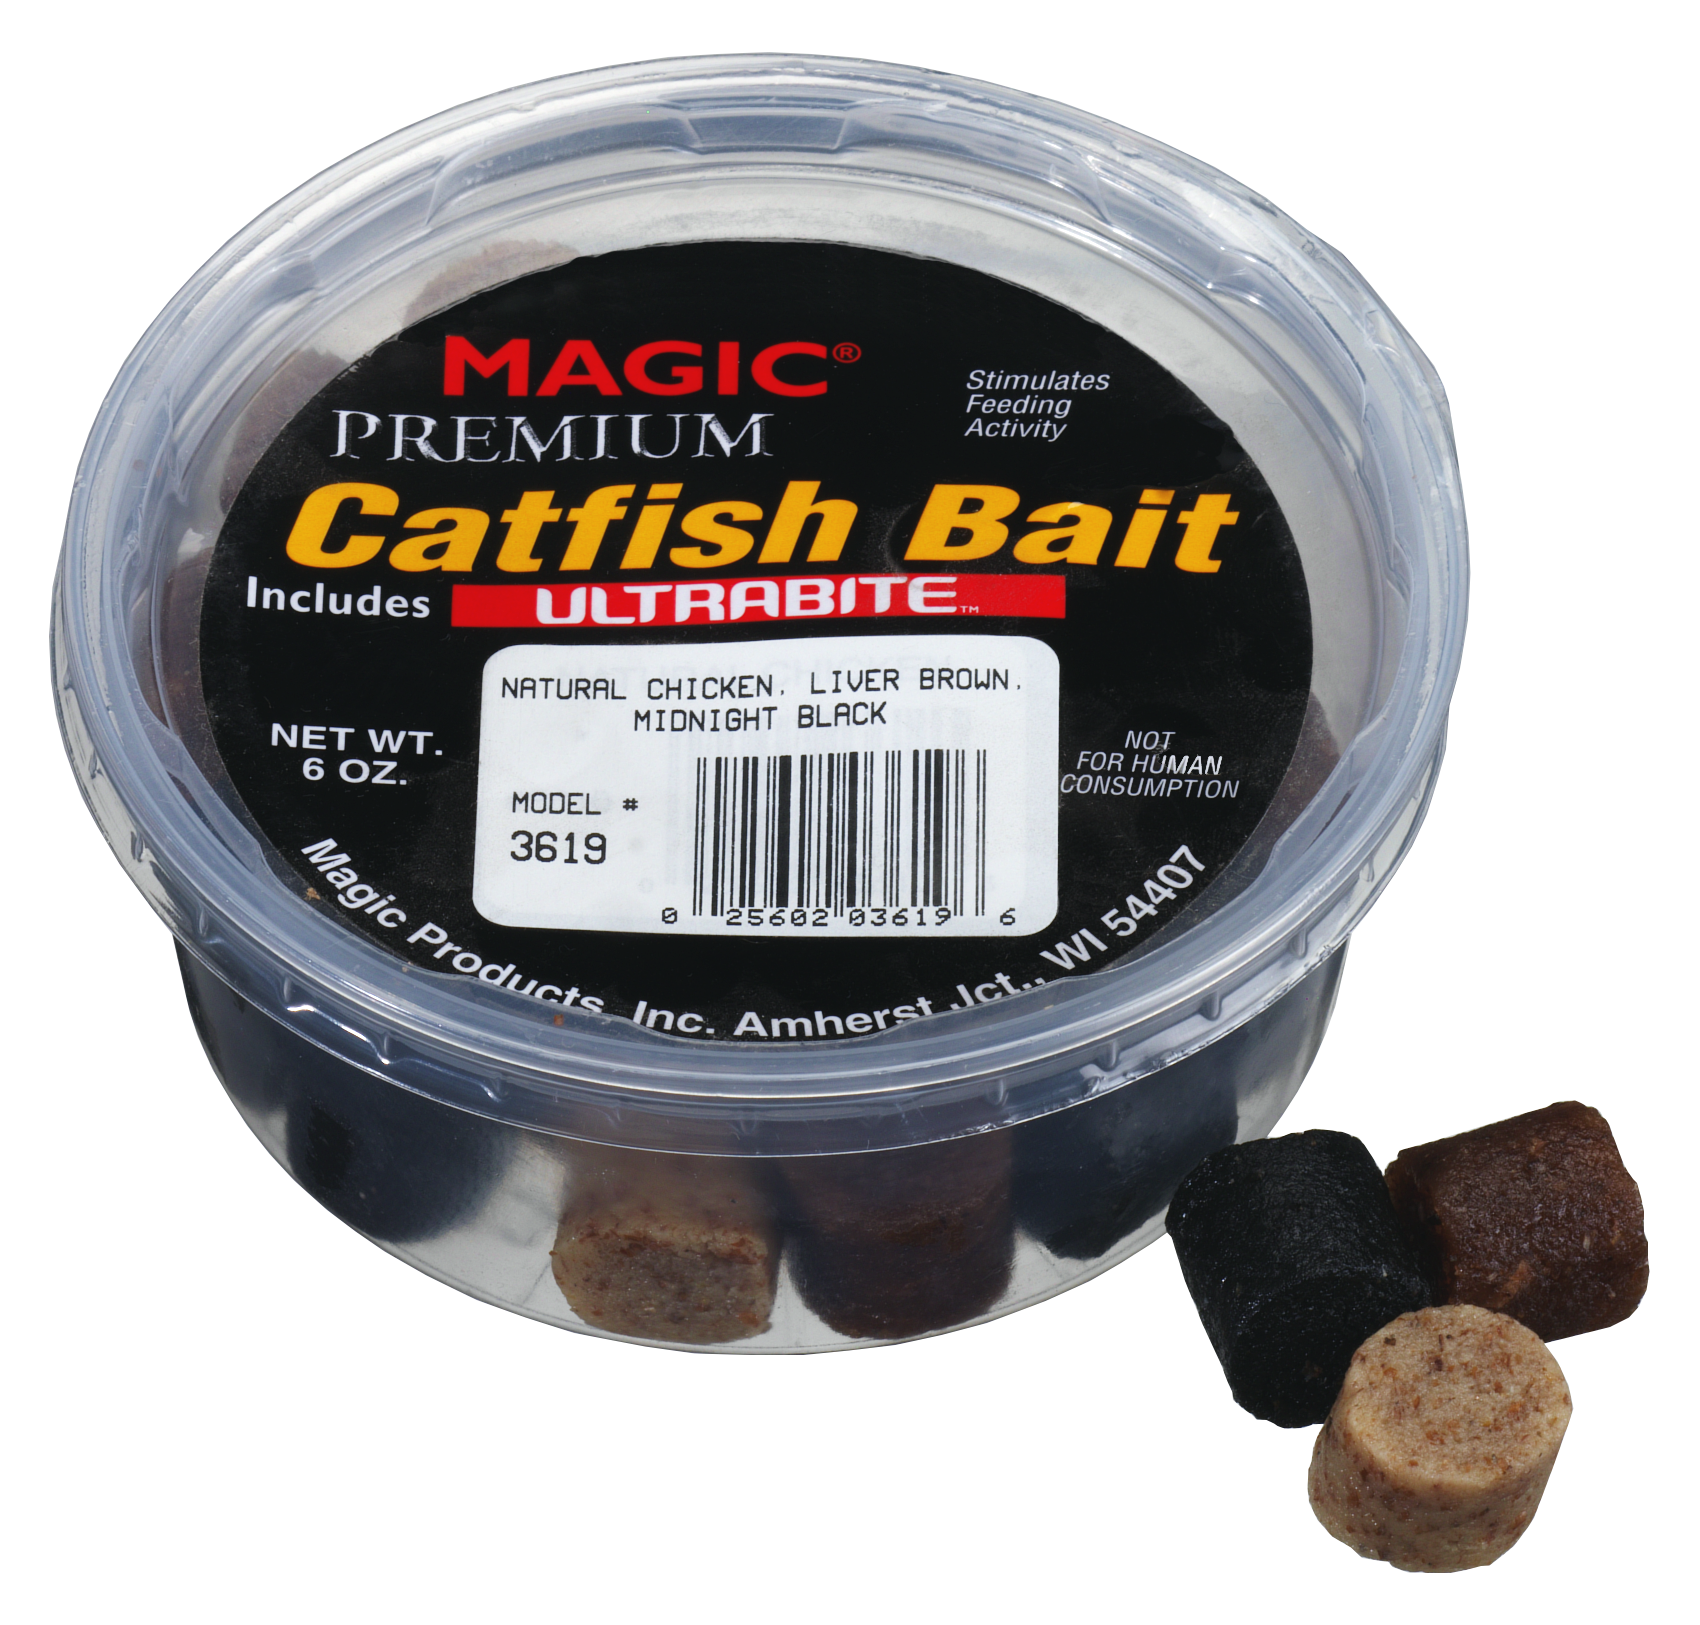 Magic Premium Catfish Bait with ULTRABITE